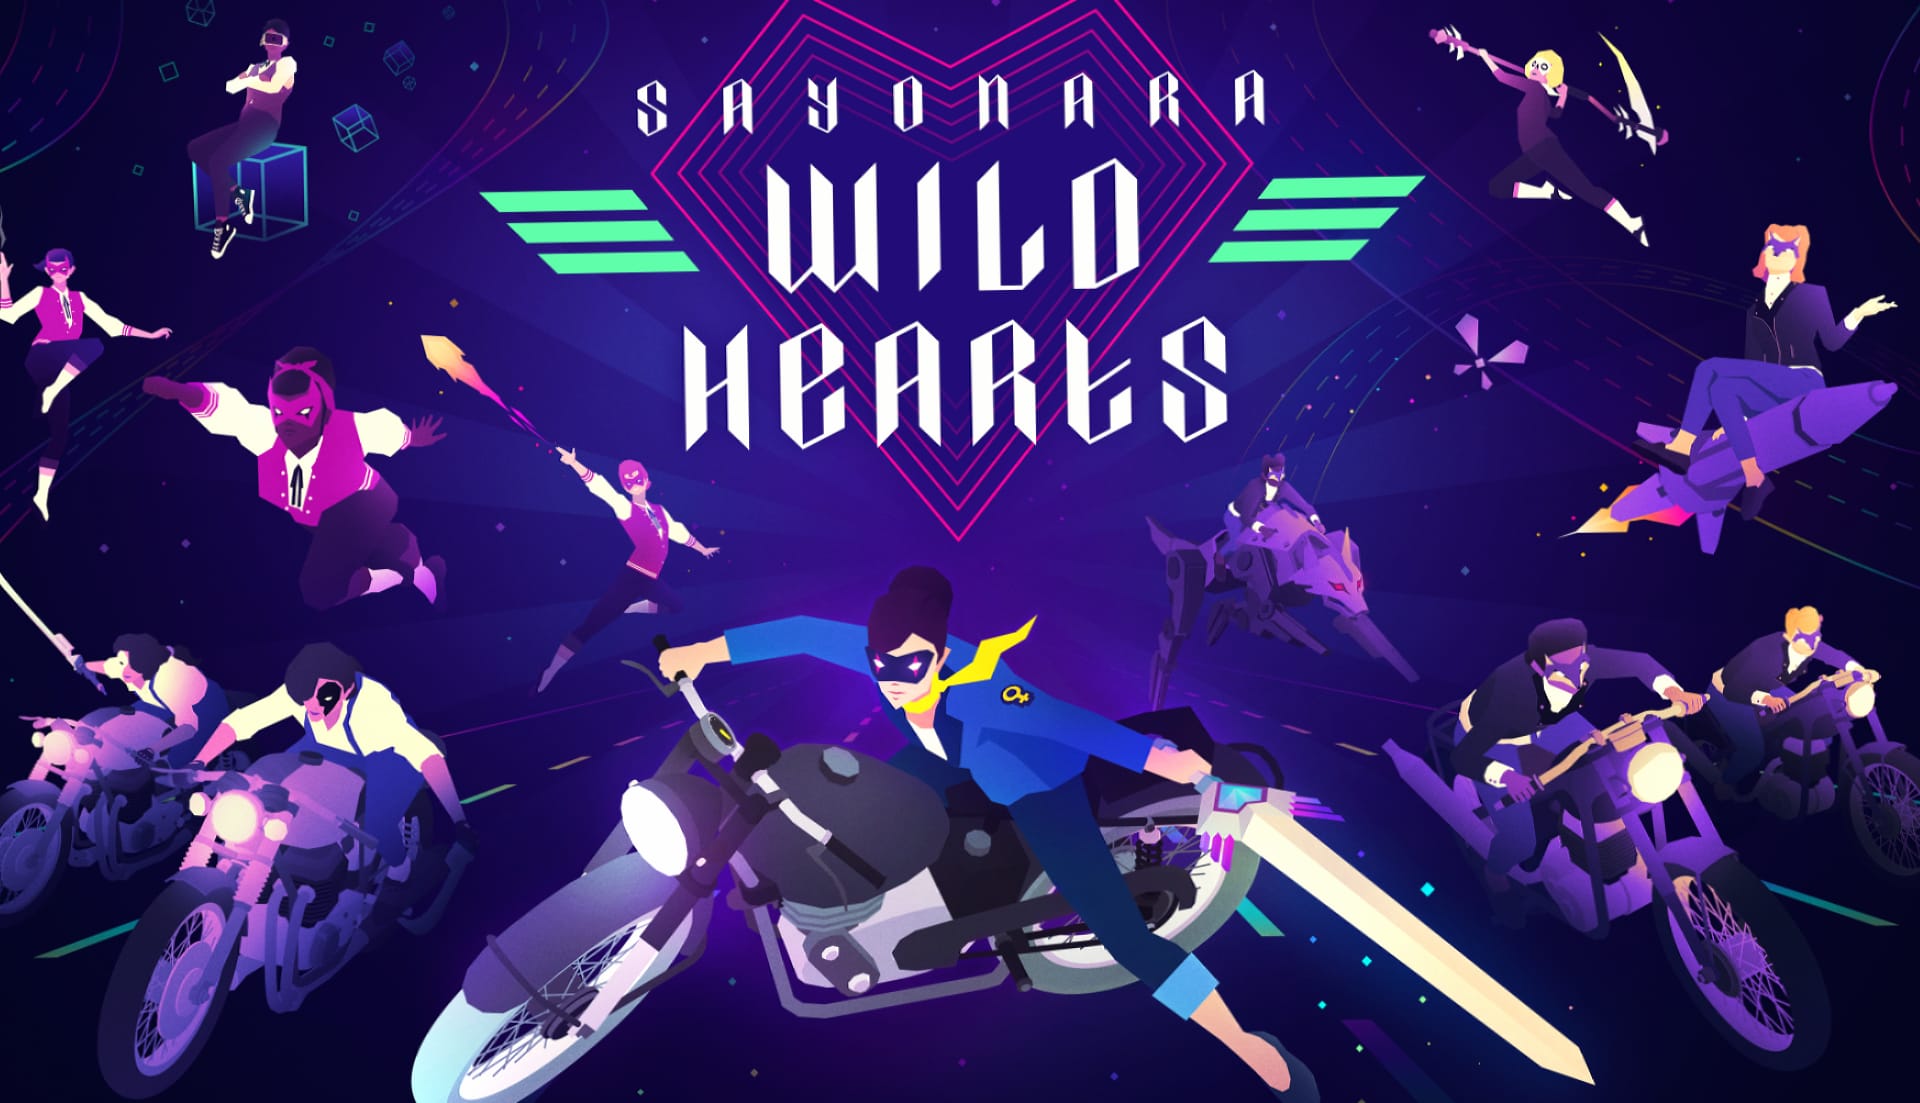 Sayonara Wild Hearts at 1280 x 960 size wallpapers HD quality